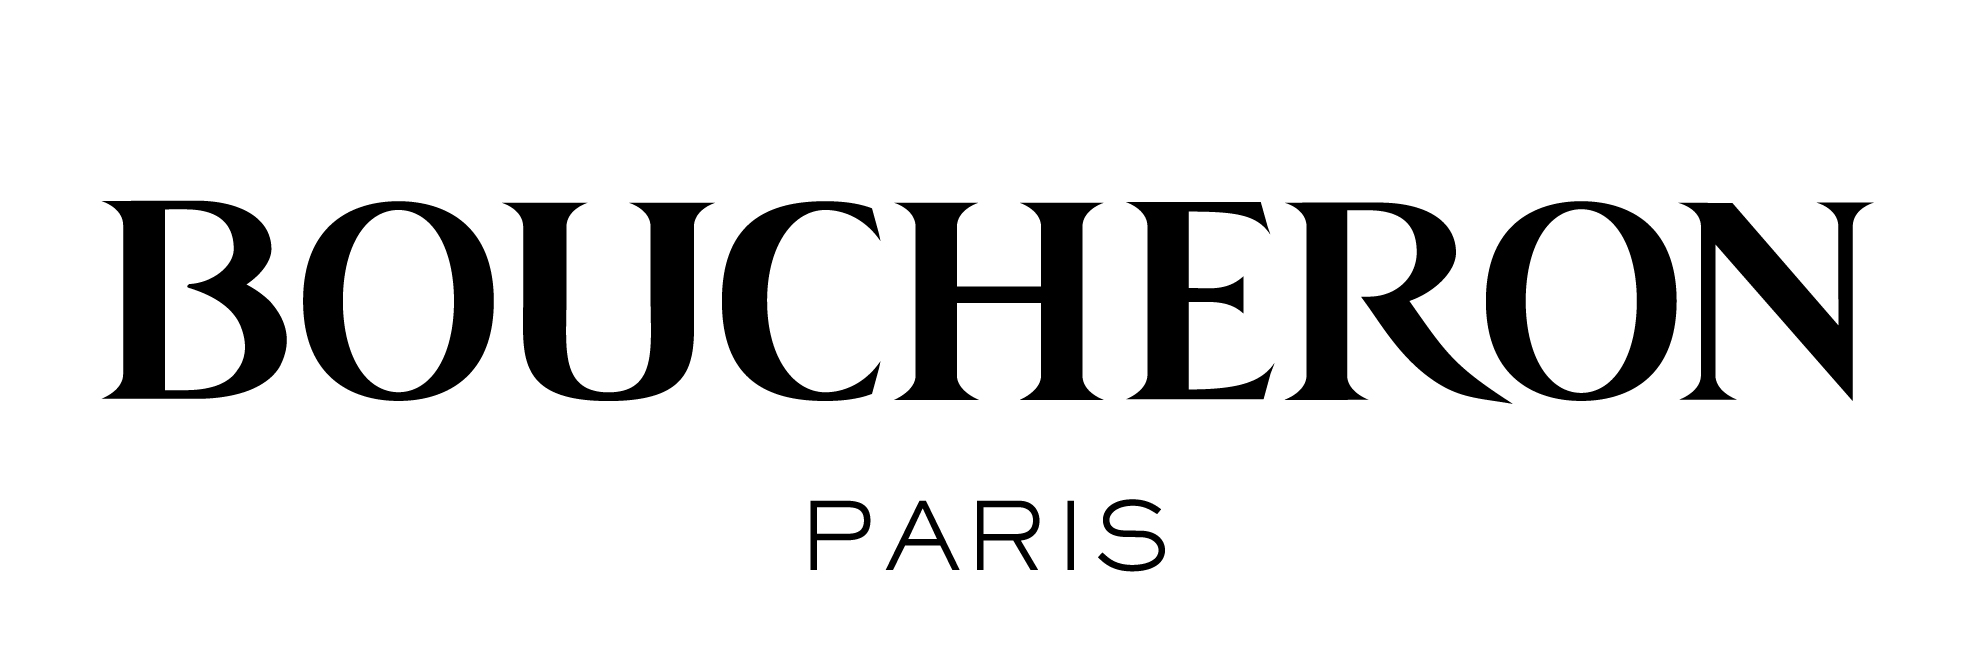 Boucheron-logo Black